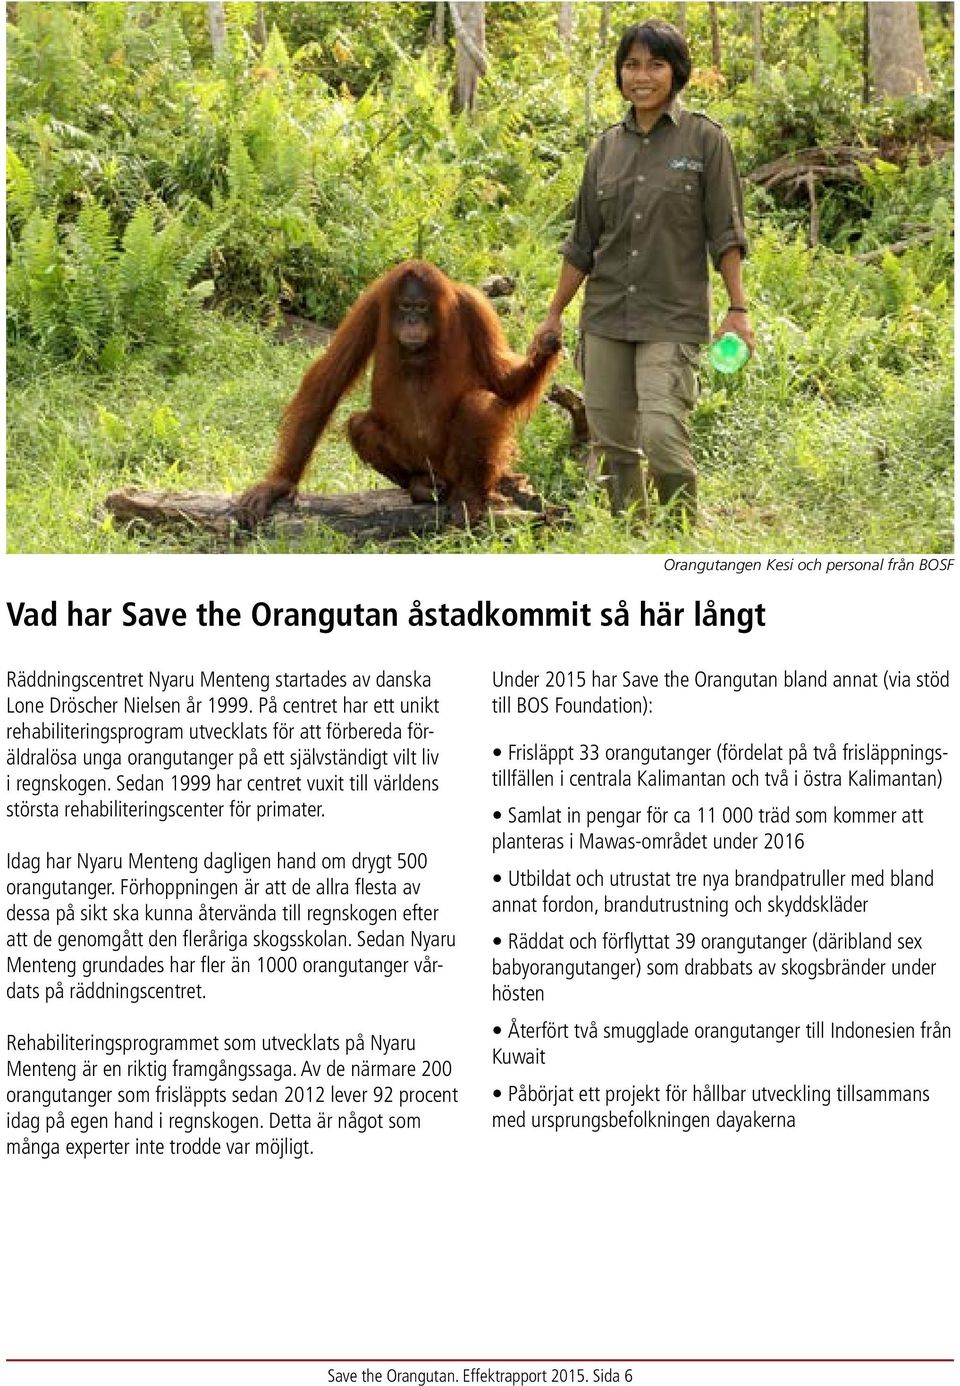 Sedan 1999 har centret vuxit till världens största rehabiliteringscenter för primater. Idag har Nyaru Menteng dagligen hand om drygt 500 orangutanger.